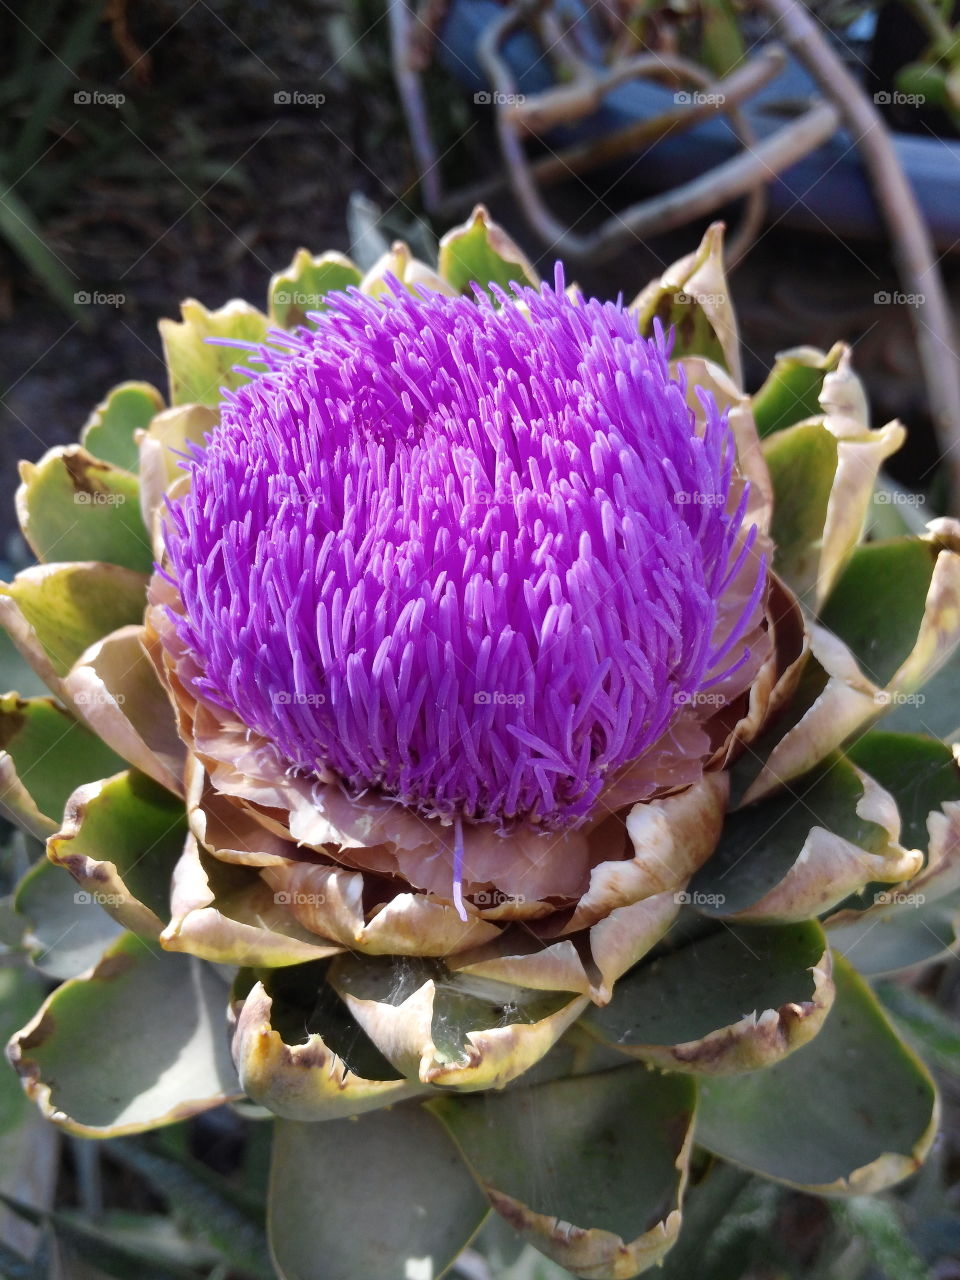 Artichoke flower